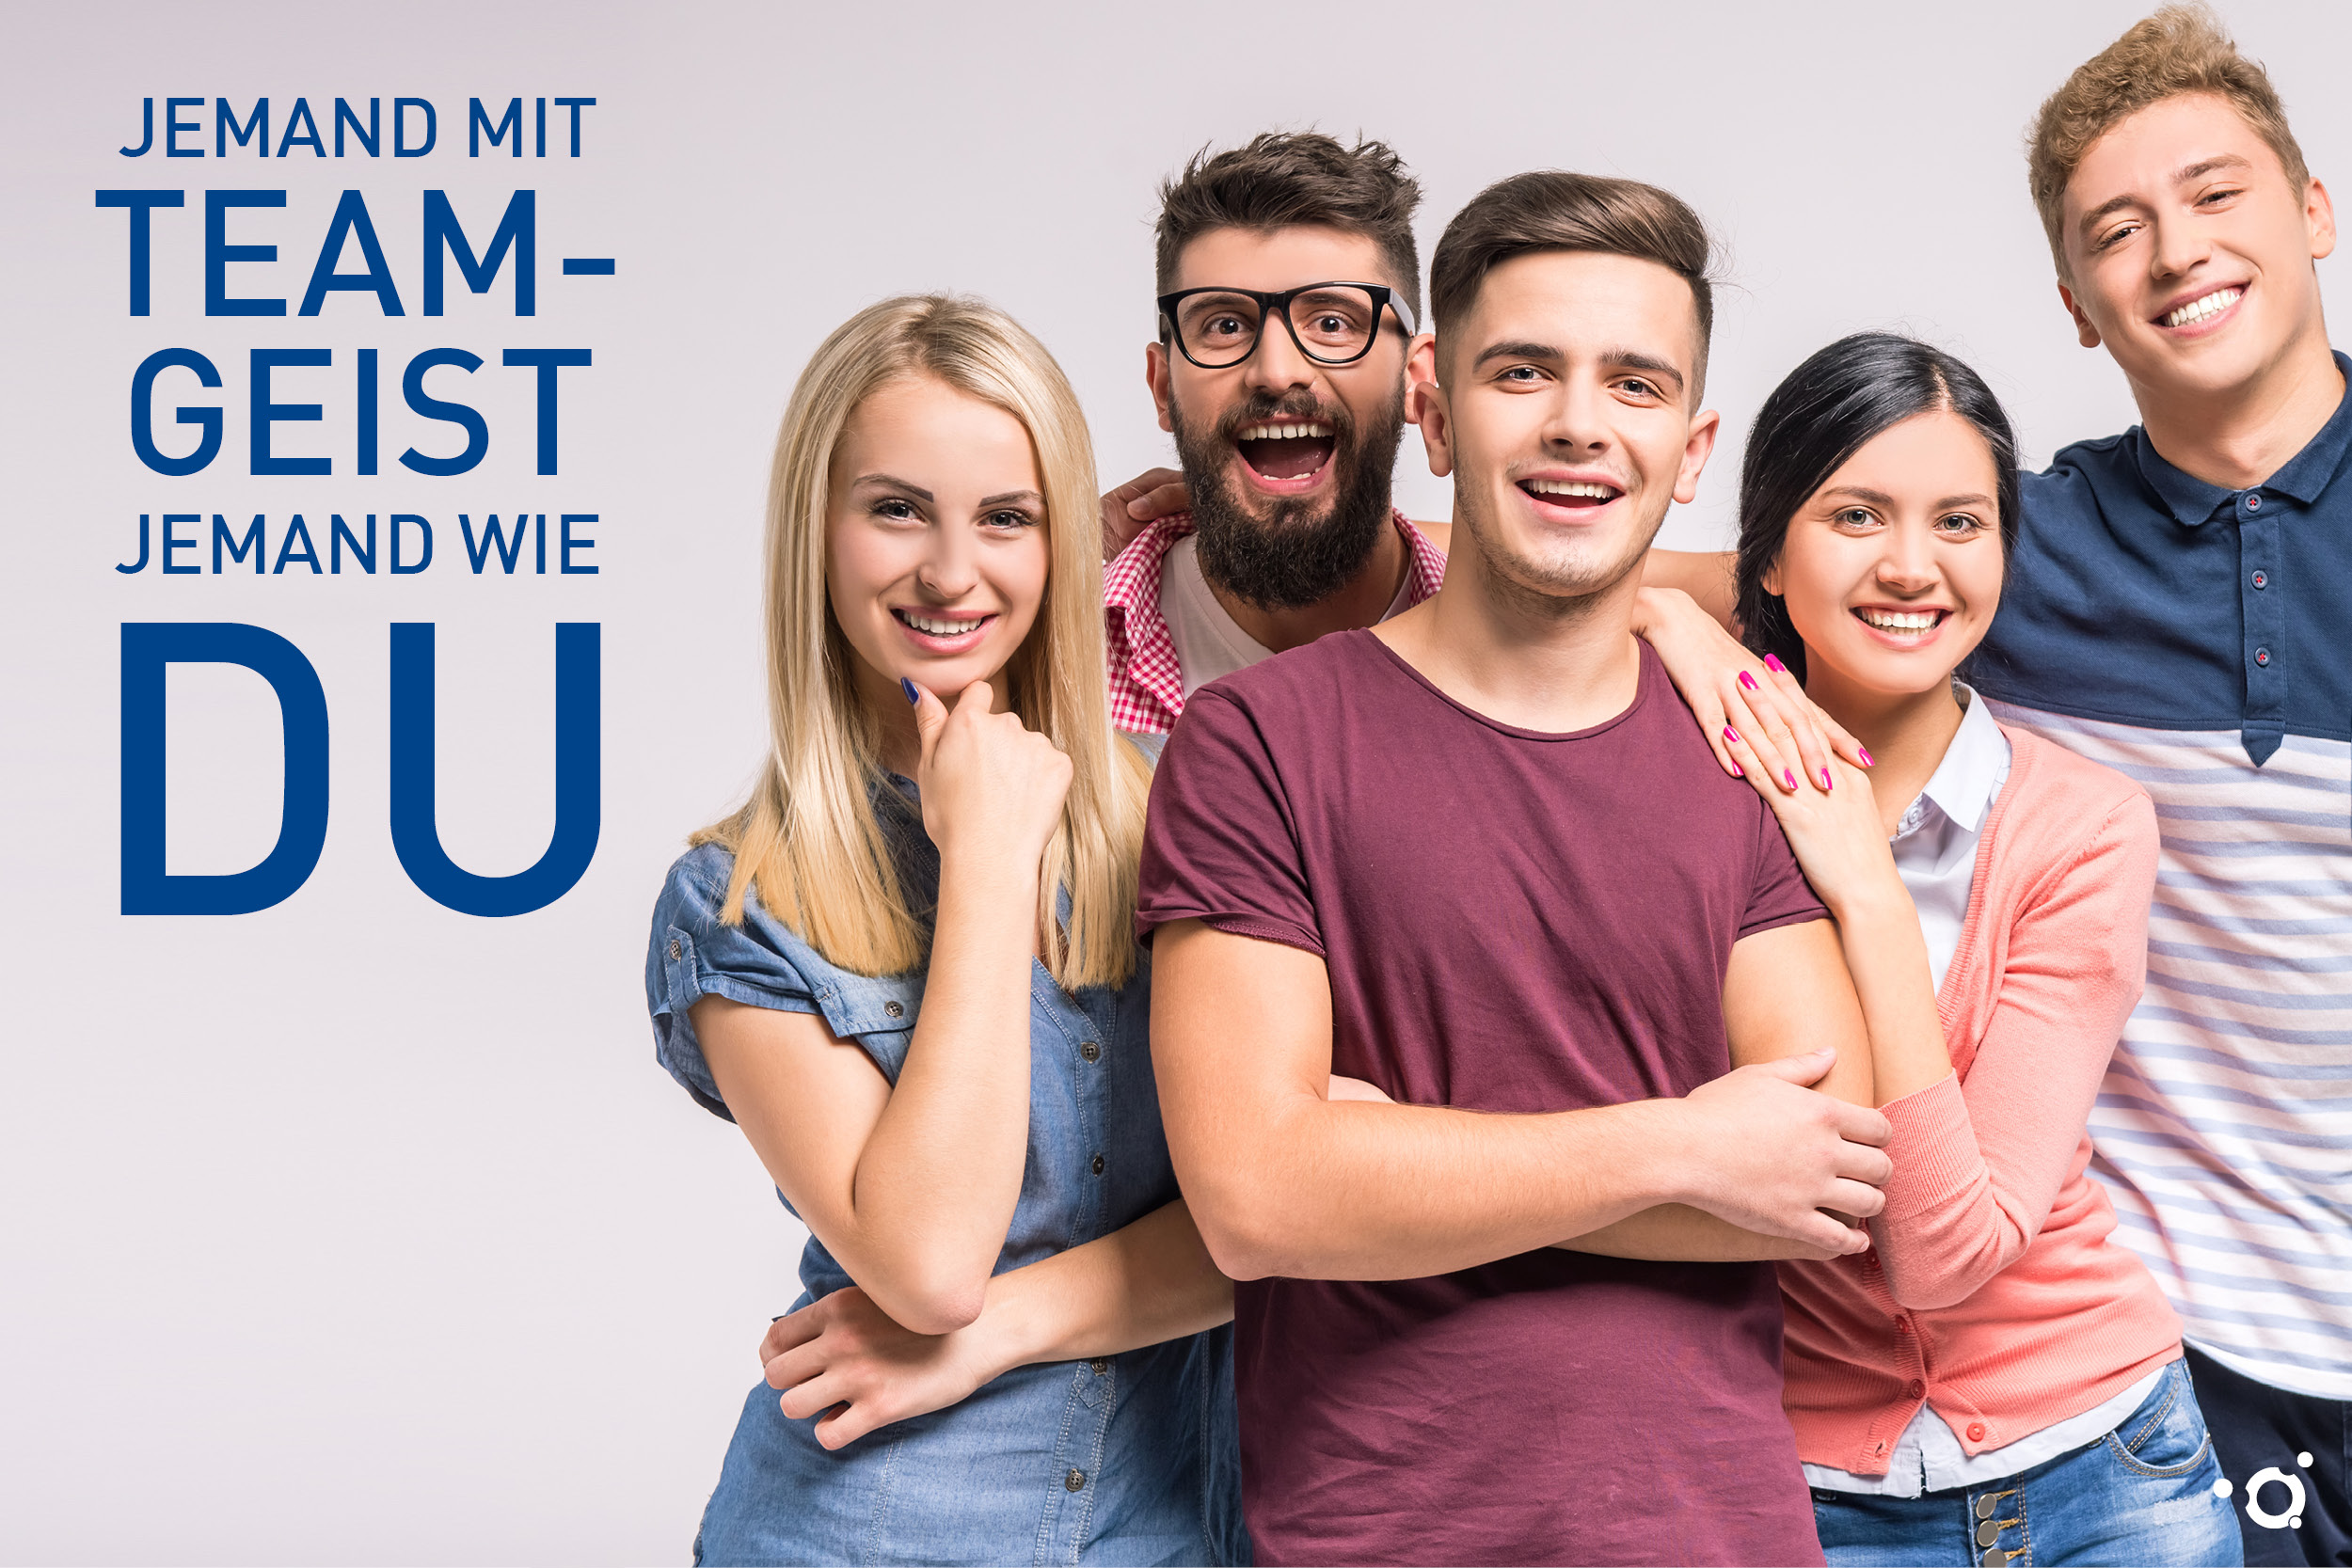 Imagebild der Azubi-Kampagne des Klinikums Ingolstadt: Jemand mit Teamgeist jemand wie DU!